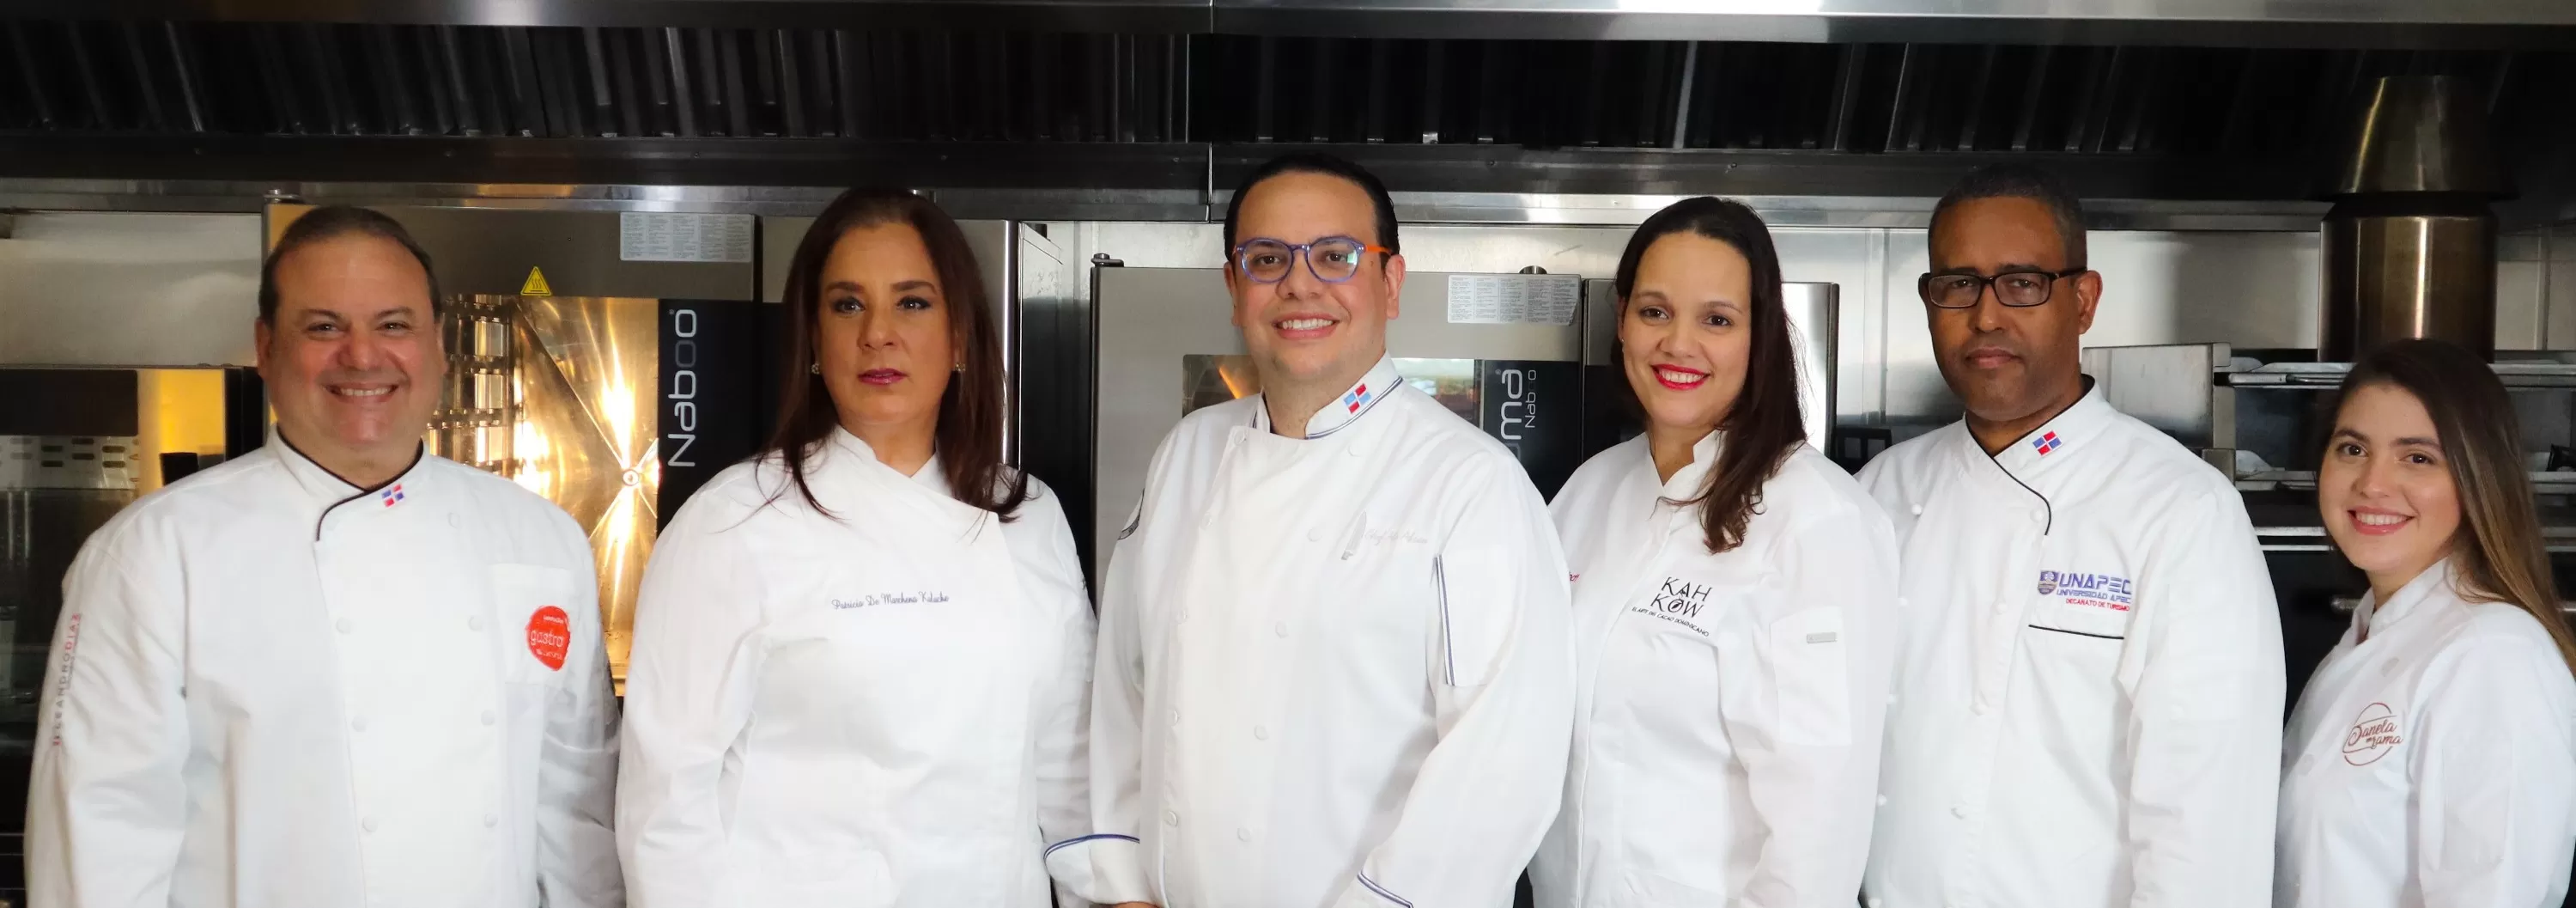 Eligen al chef Alejandro Abreu nuevo presidente Adochefs